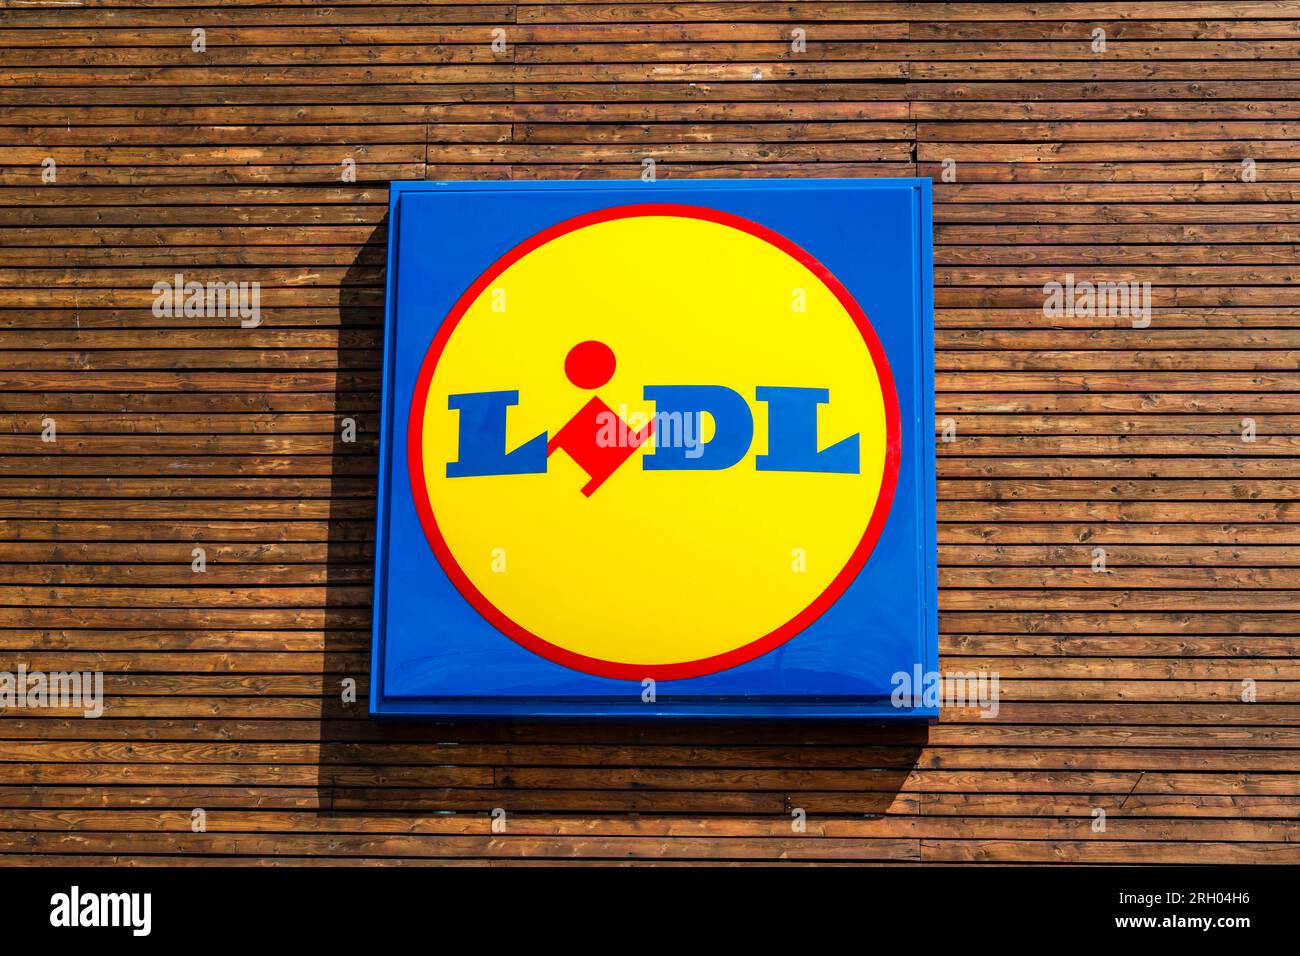 Lidl logo on a sign, Scotland, UK, Europe Stock Photo